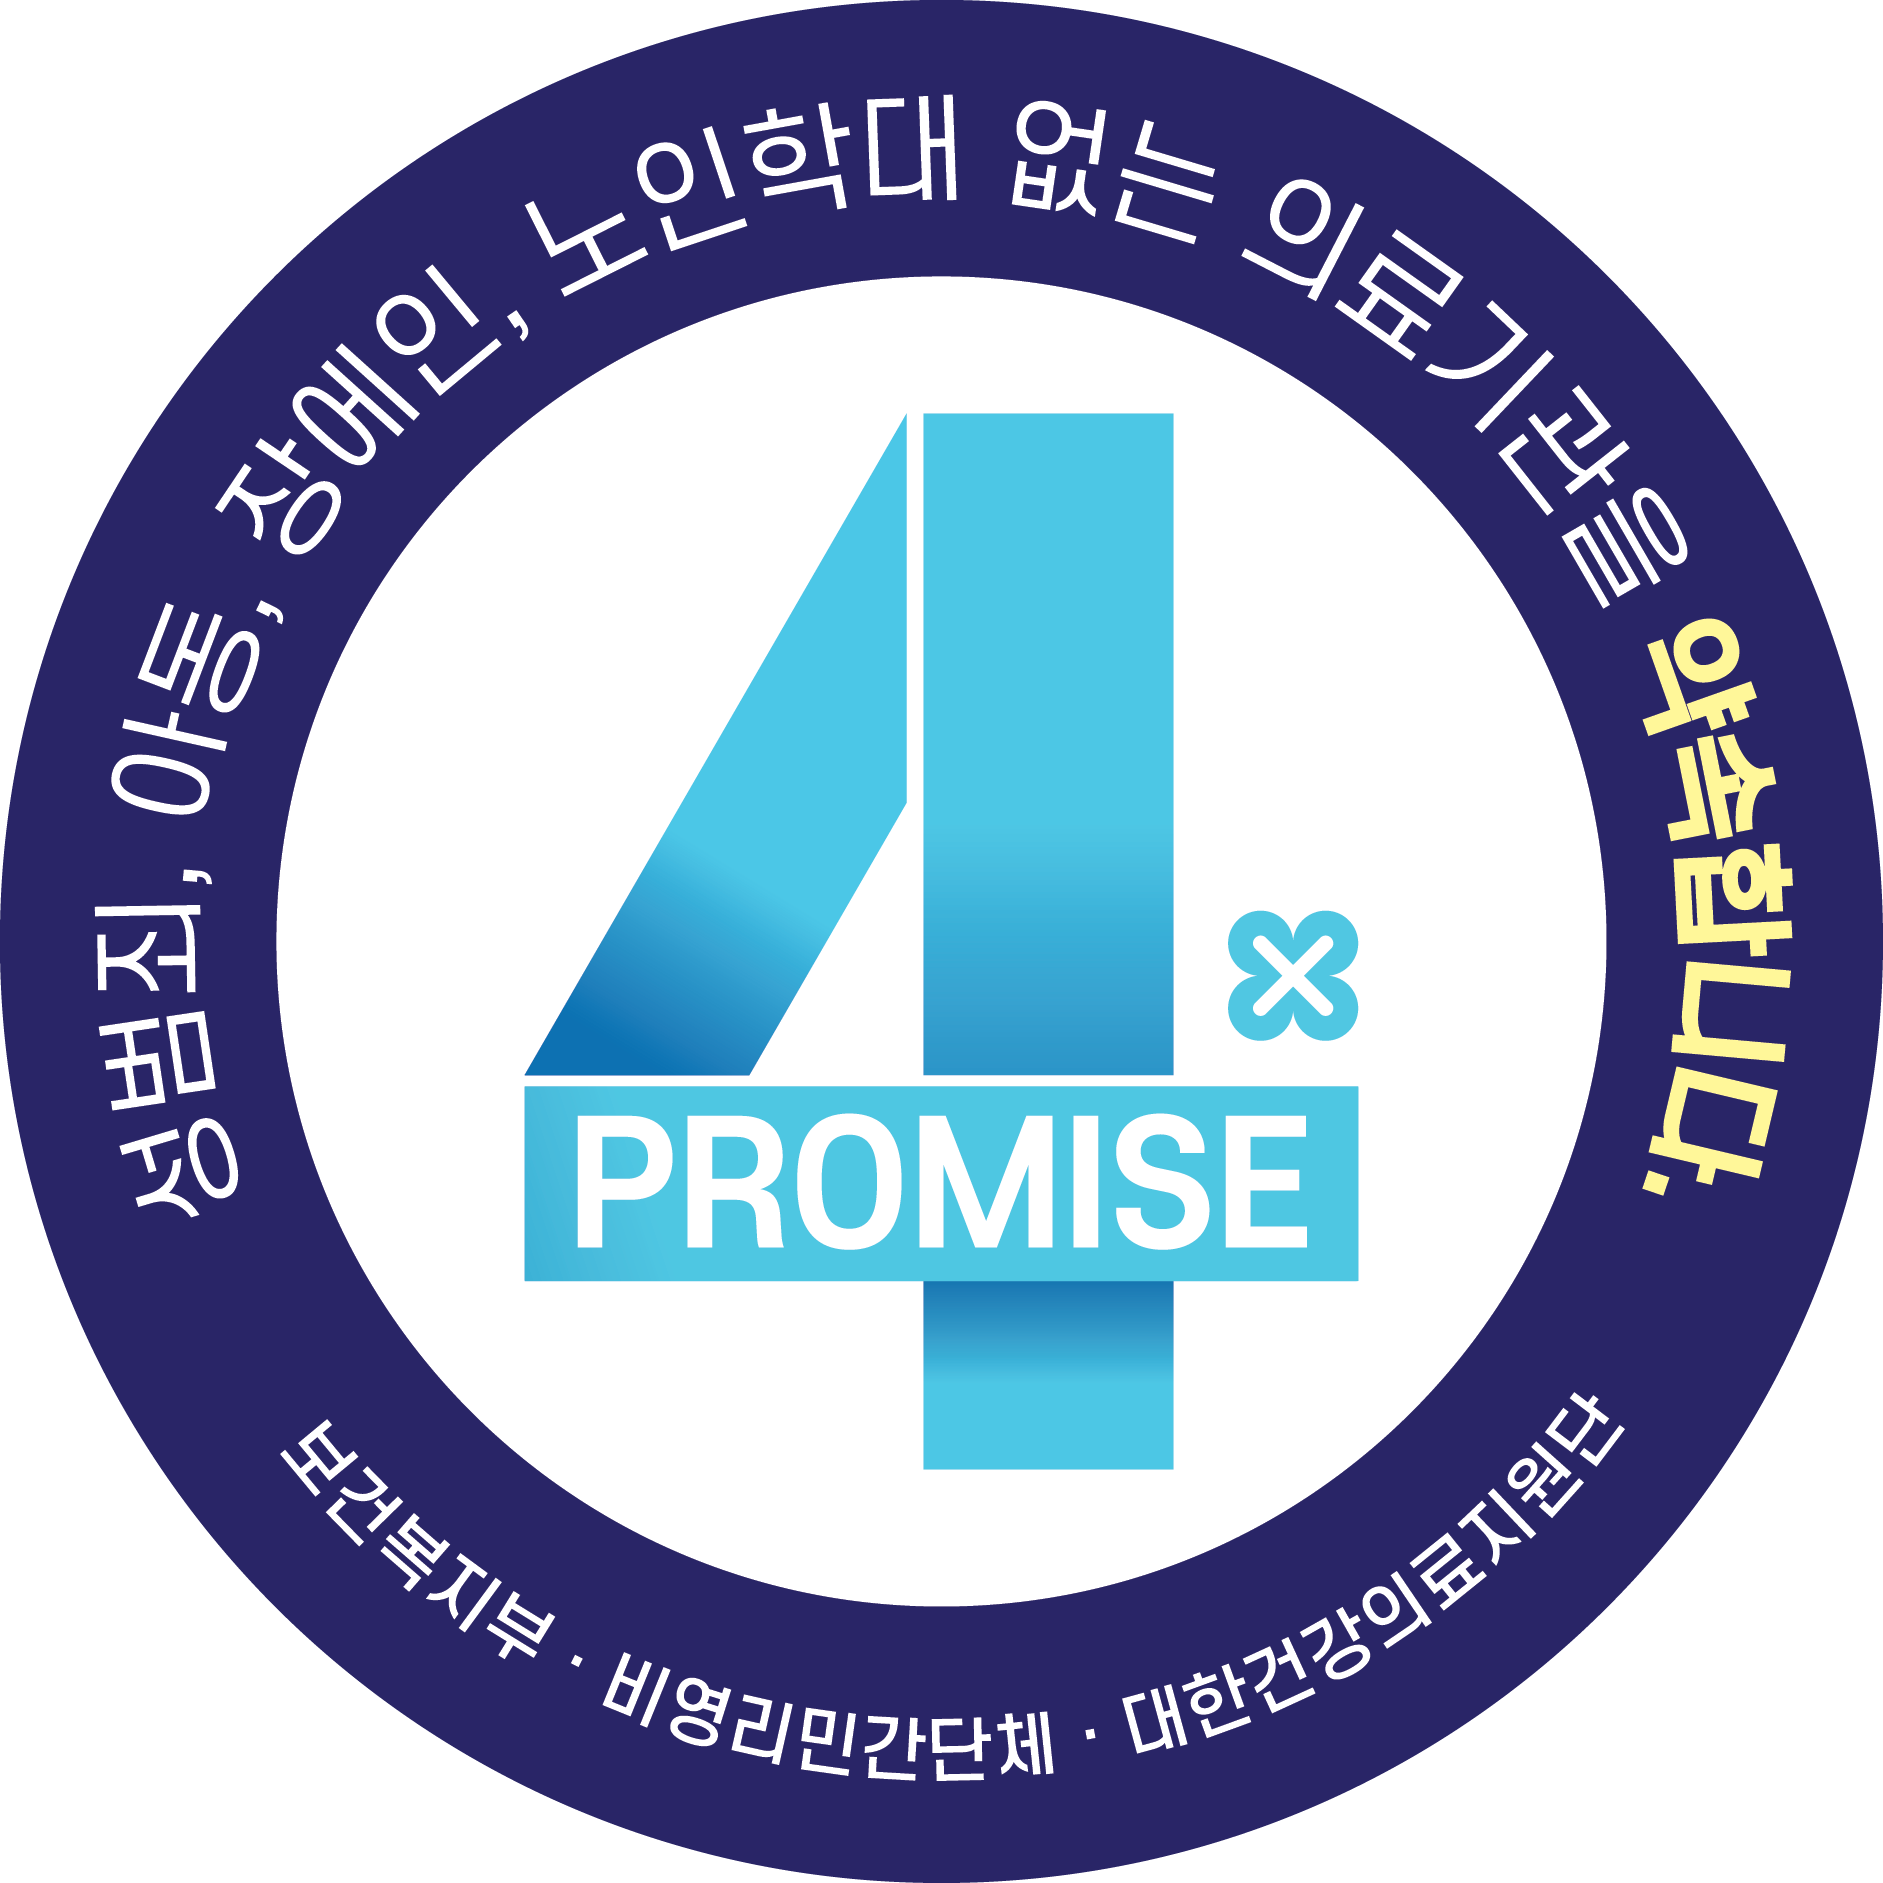 4Promise, 4대 범죄 없으며 예방을 위해 지속적으로 지키는 약속합니다.